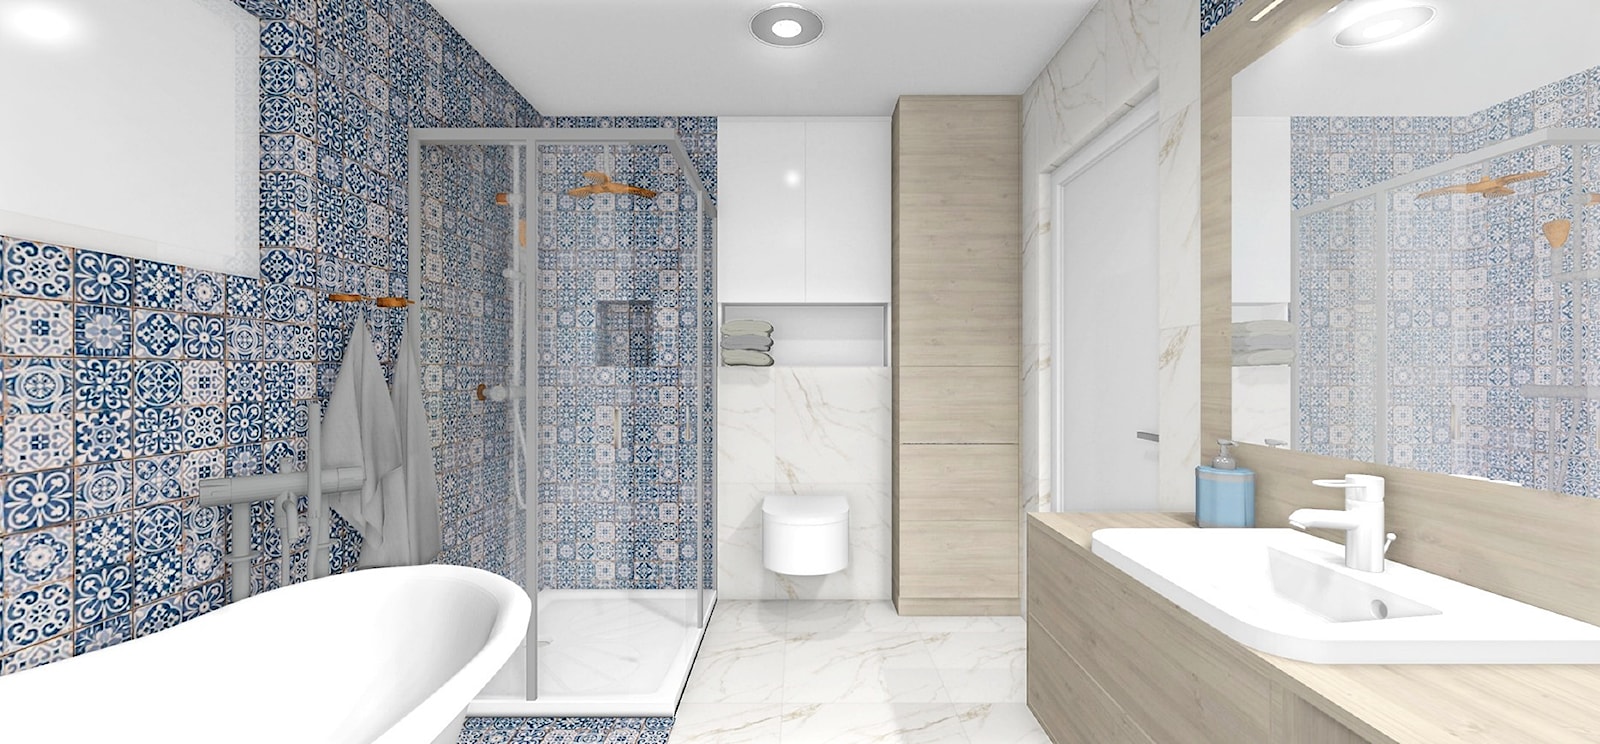 Łazienka z niebieską mozaiką - zdjęcie od CzajkaDesign - Homebook